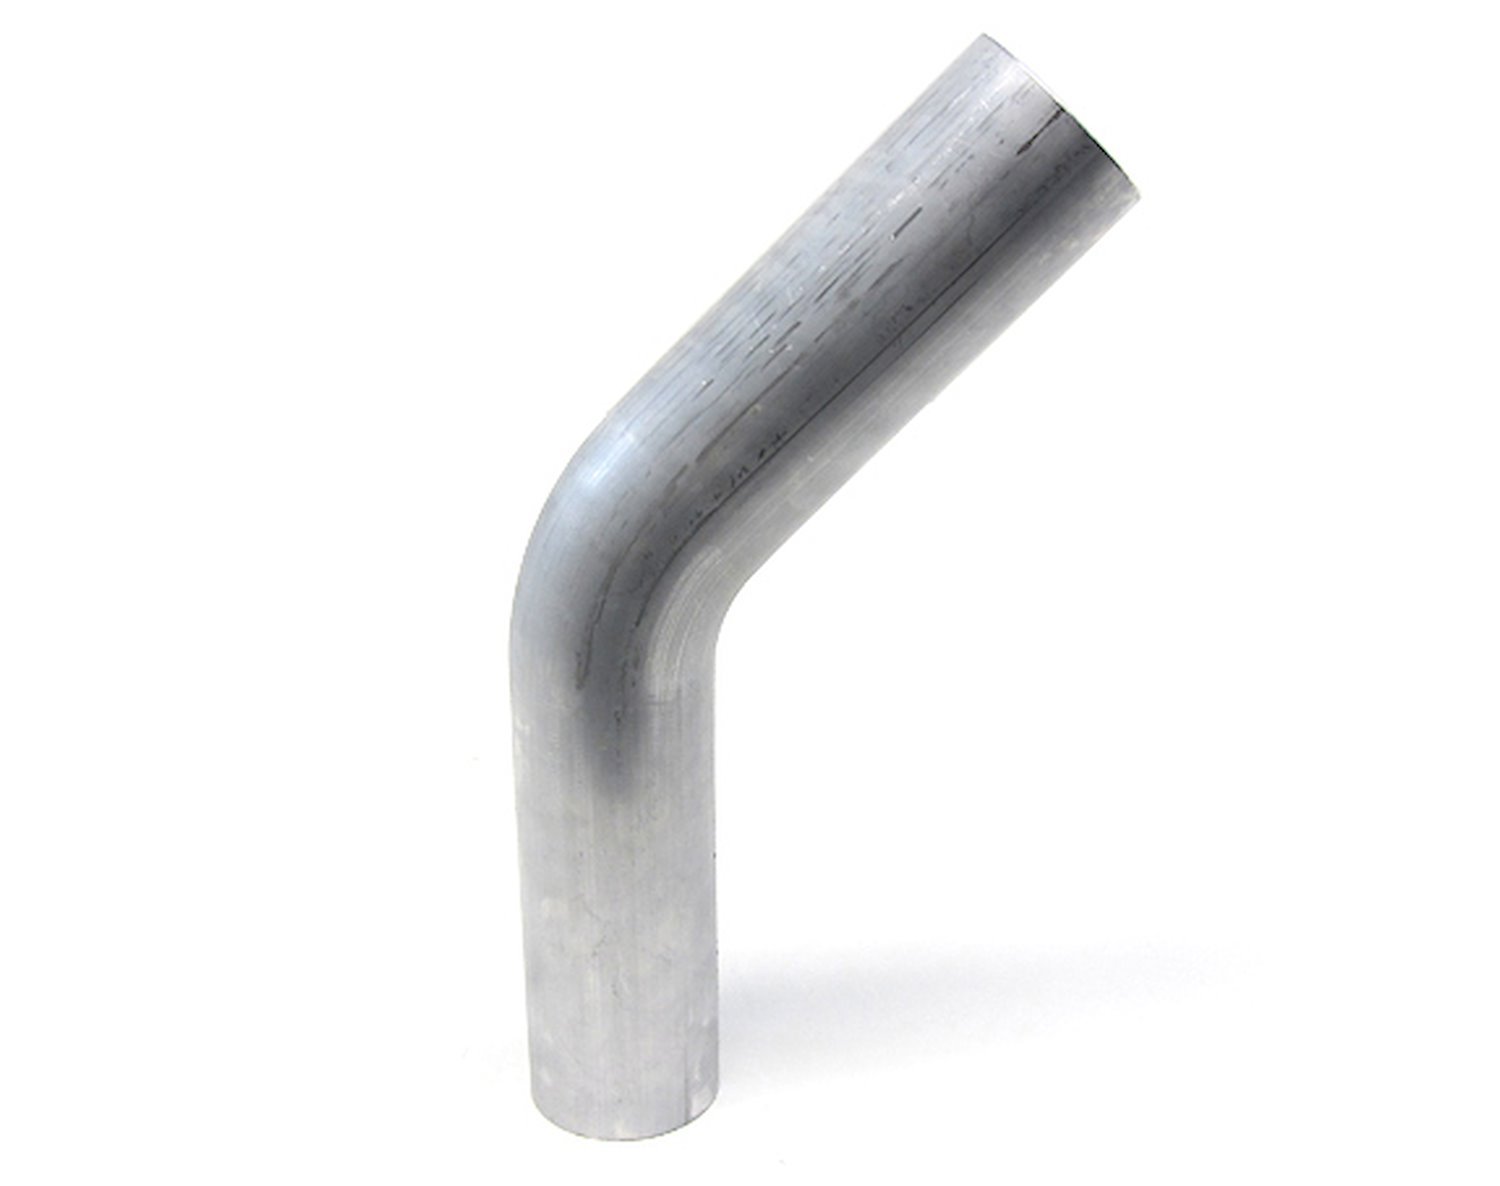 AT45-400-CLR-55 Aluminum Elbow Tube, 6061 Aluminum, 45-Degree Bend Elbow Tubing, 4 in. OD, Large Radius, 5-1/2 in. CLR